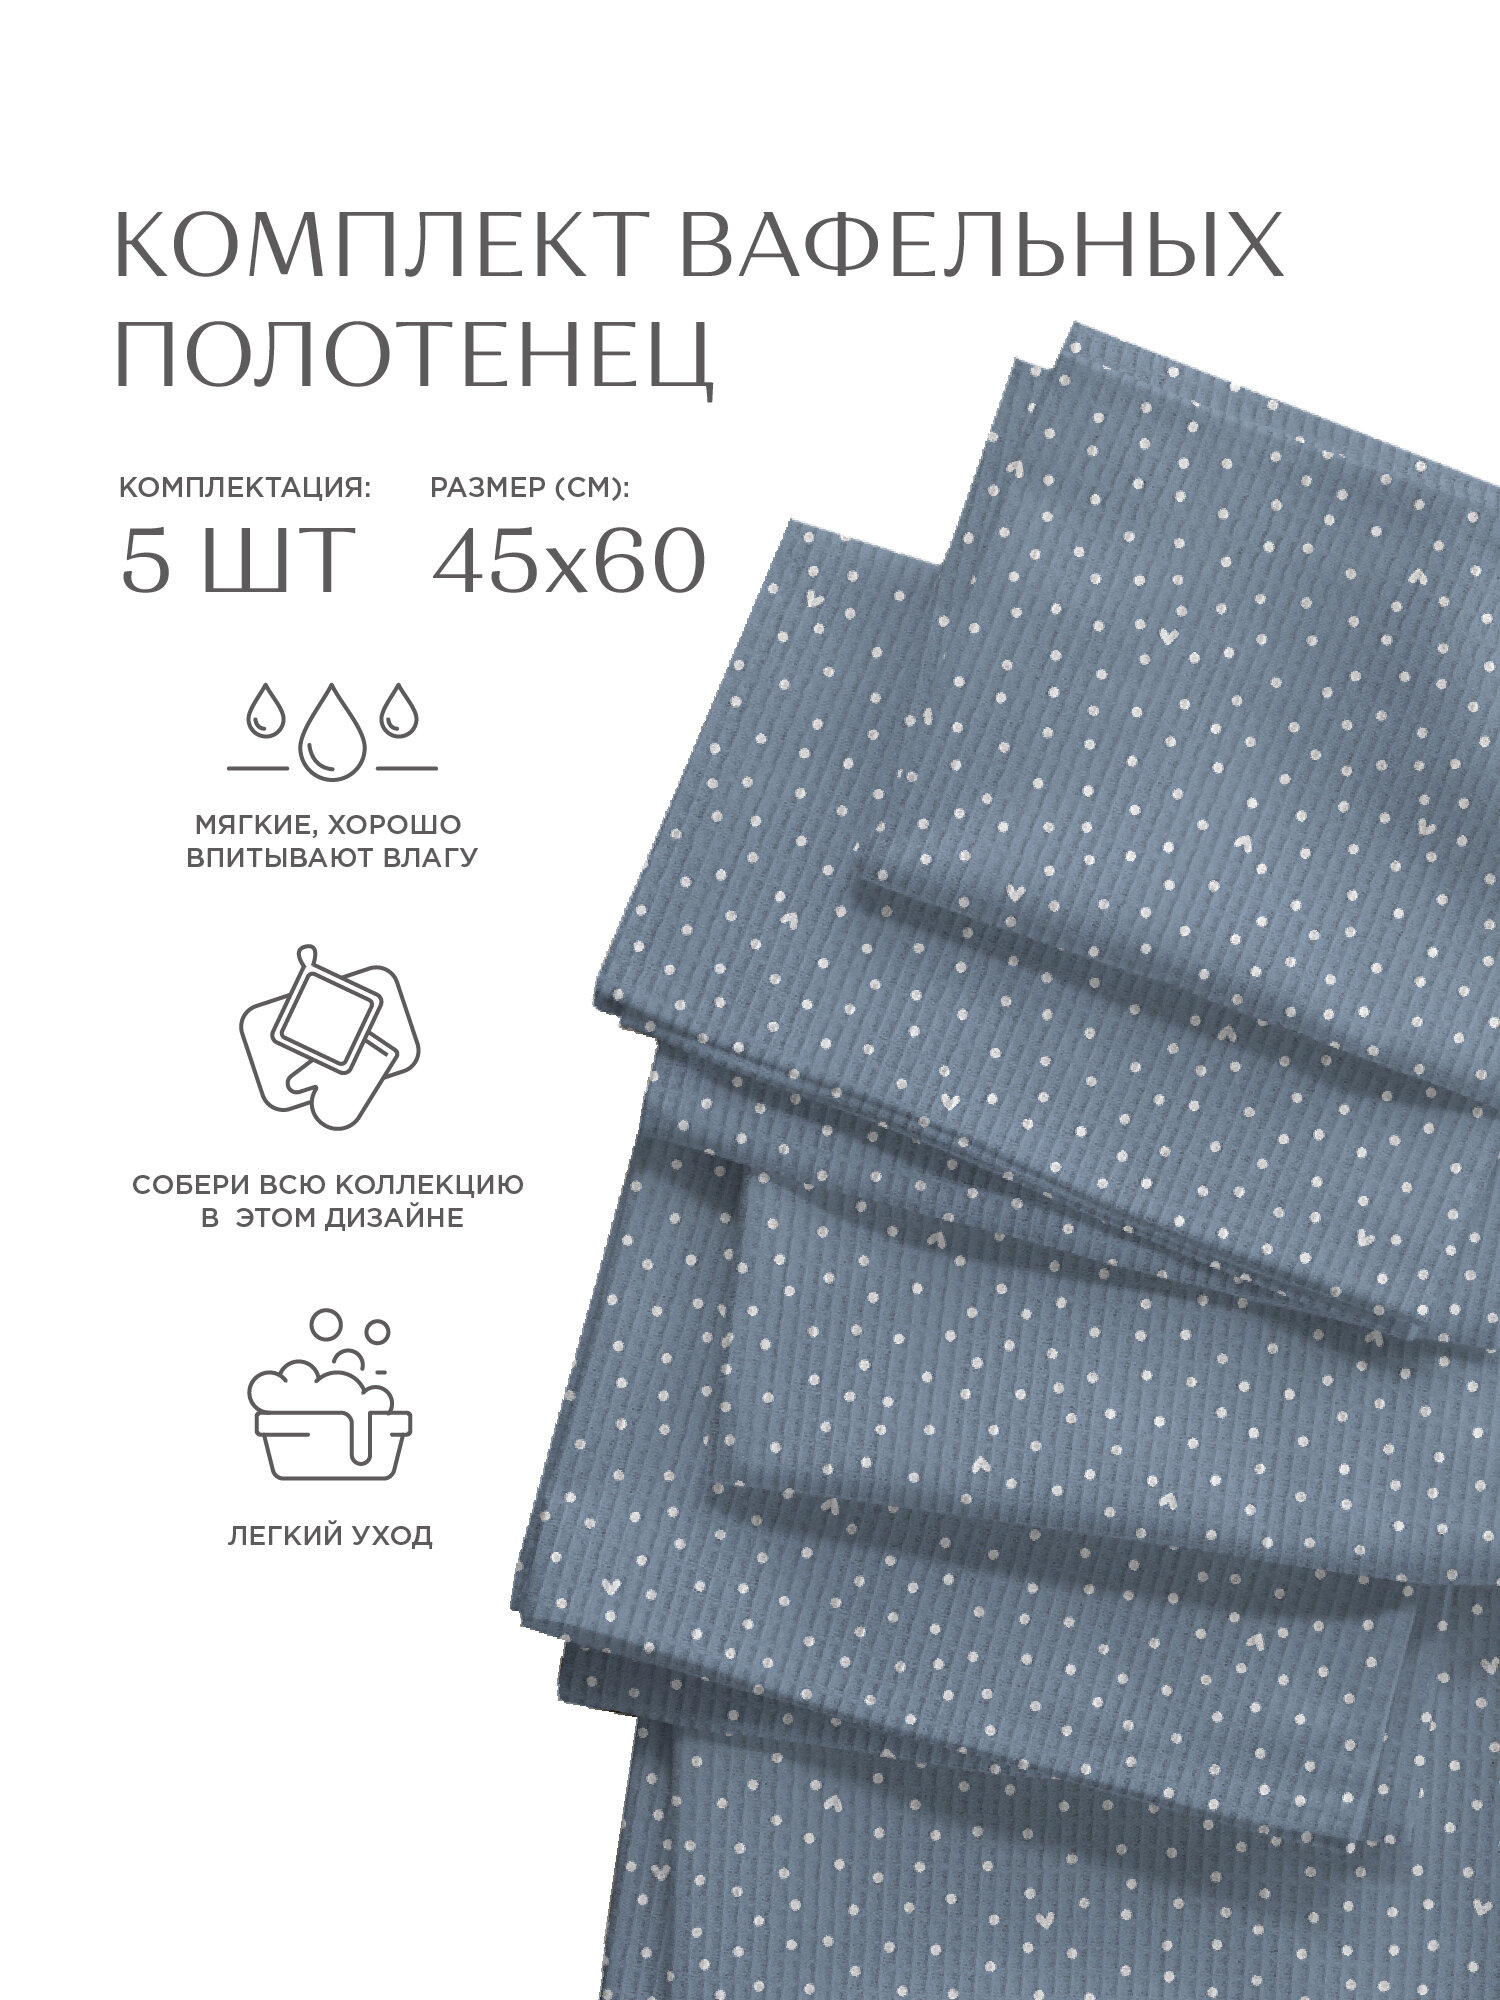 Комплект вафельных полотенец 45х60 (5 шт.) "Унисон" рис 33002-3 Love - фотография № 17